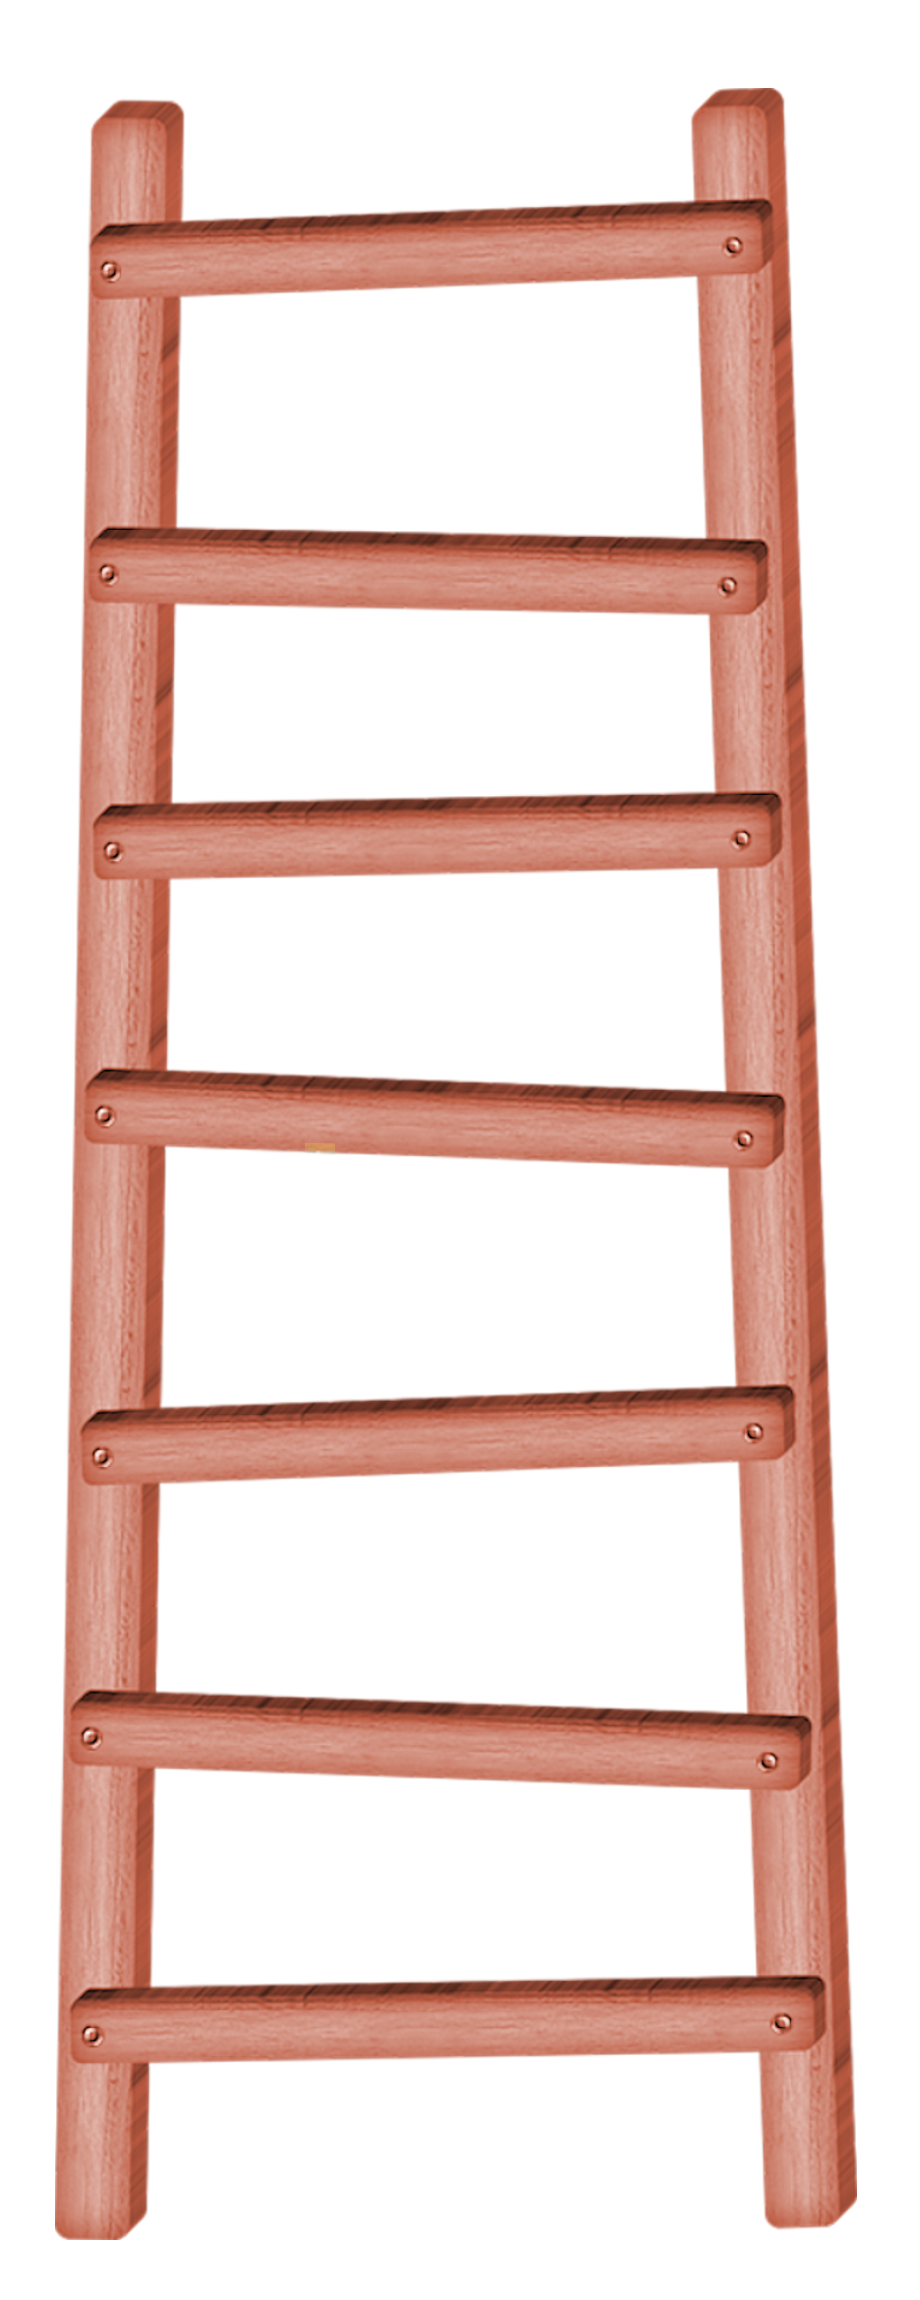 Ladder Transparent Background